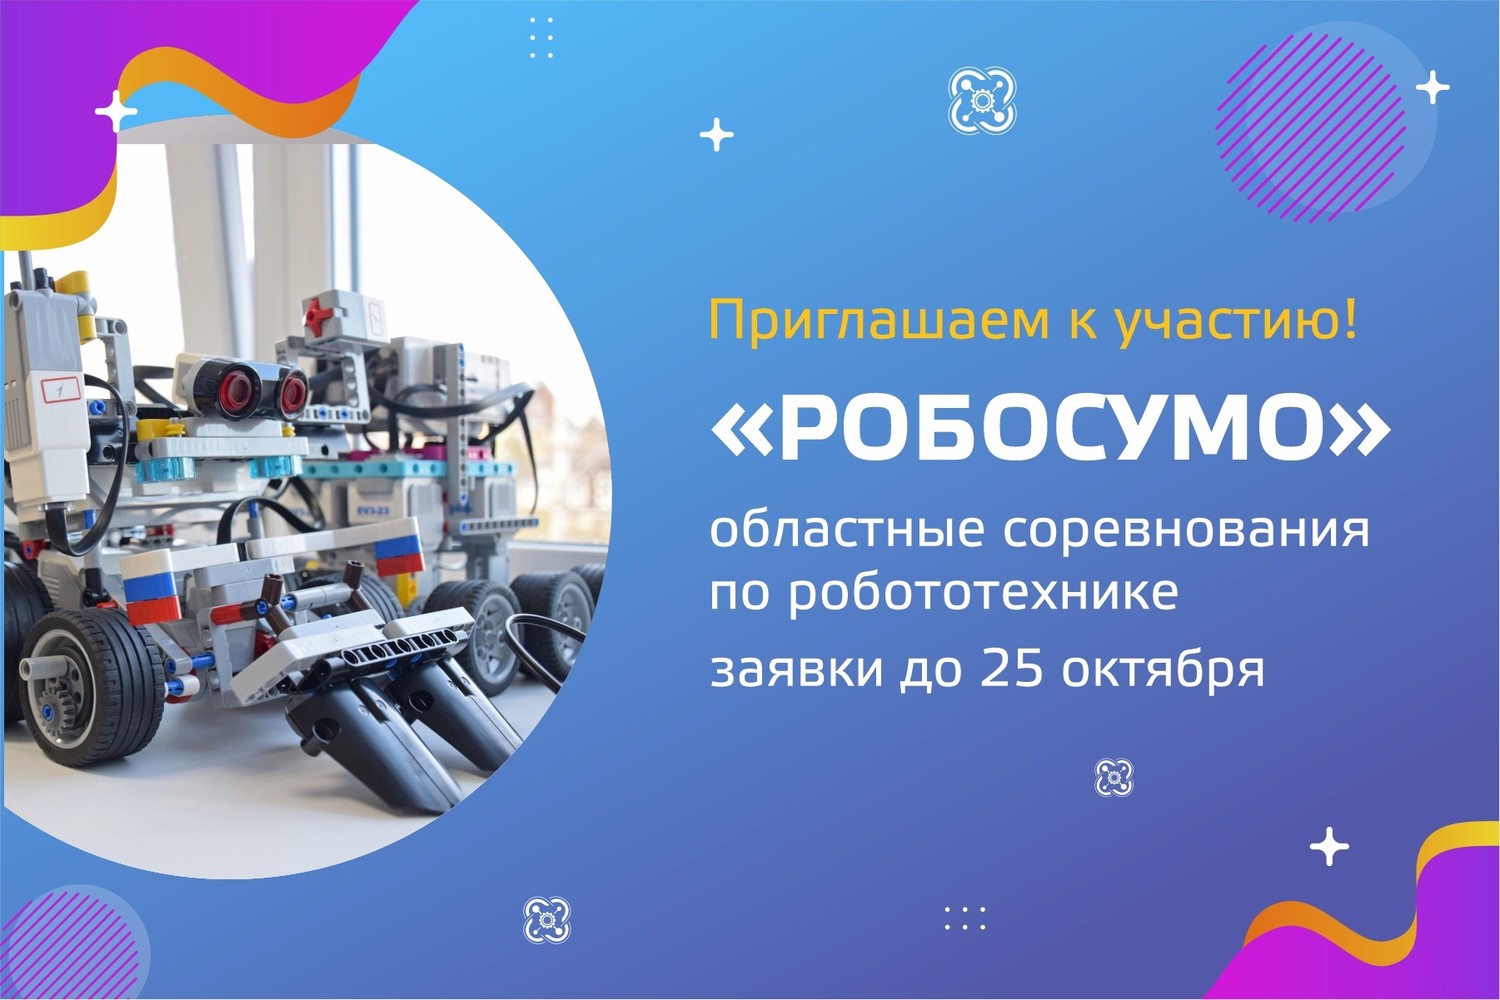 В «Кванториуме» г. Омутнинска пройдут областные соревнования «Робототехническое сумо»!